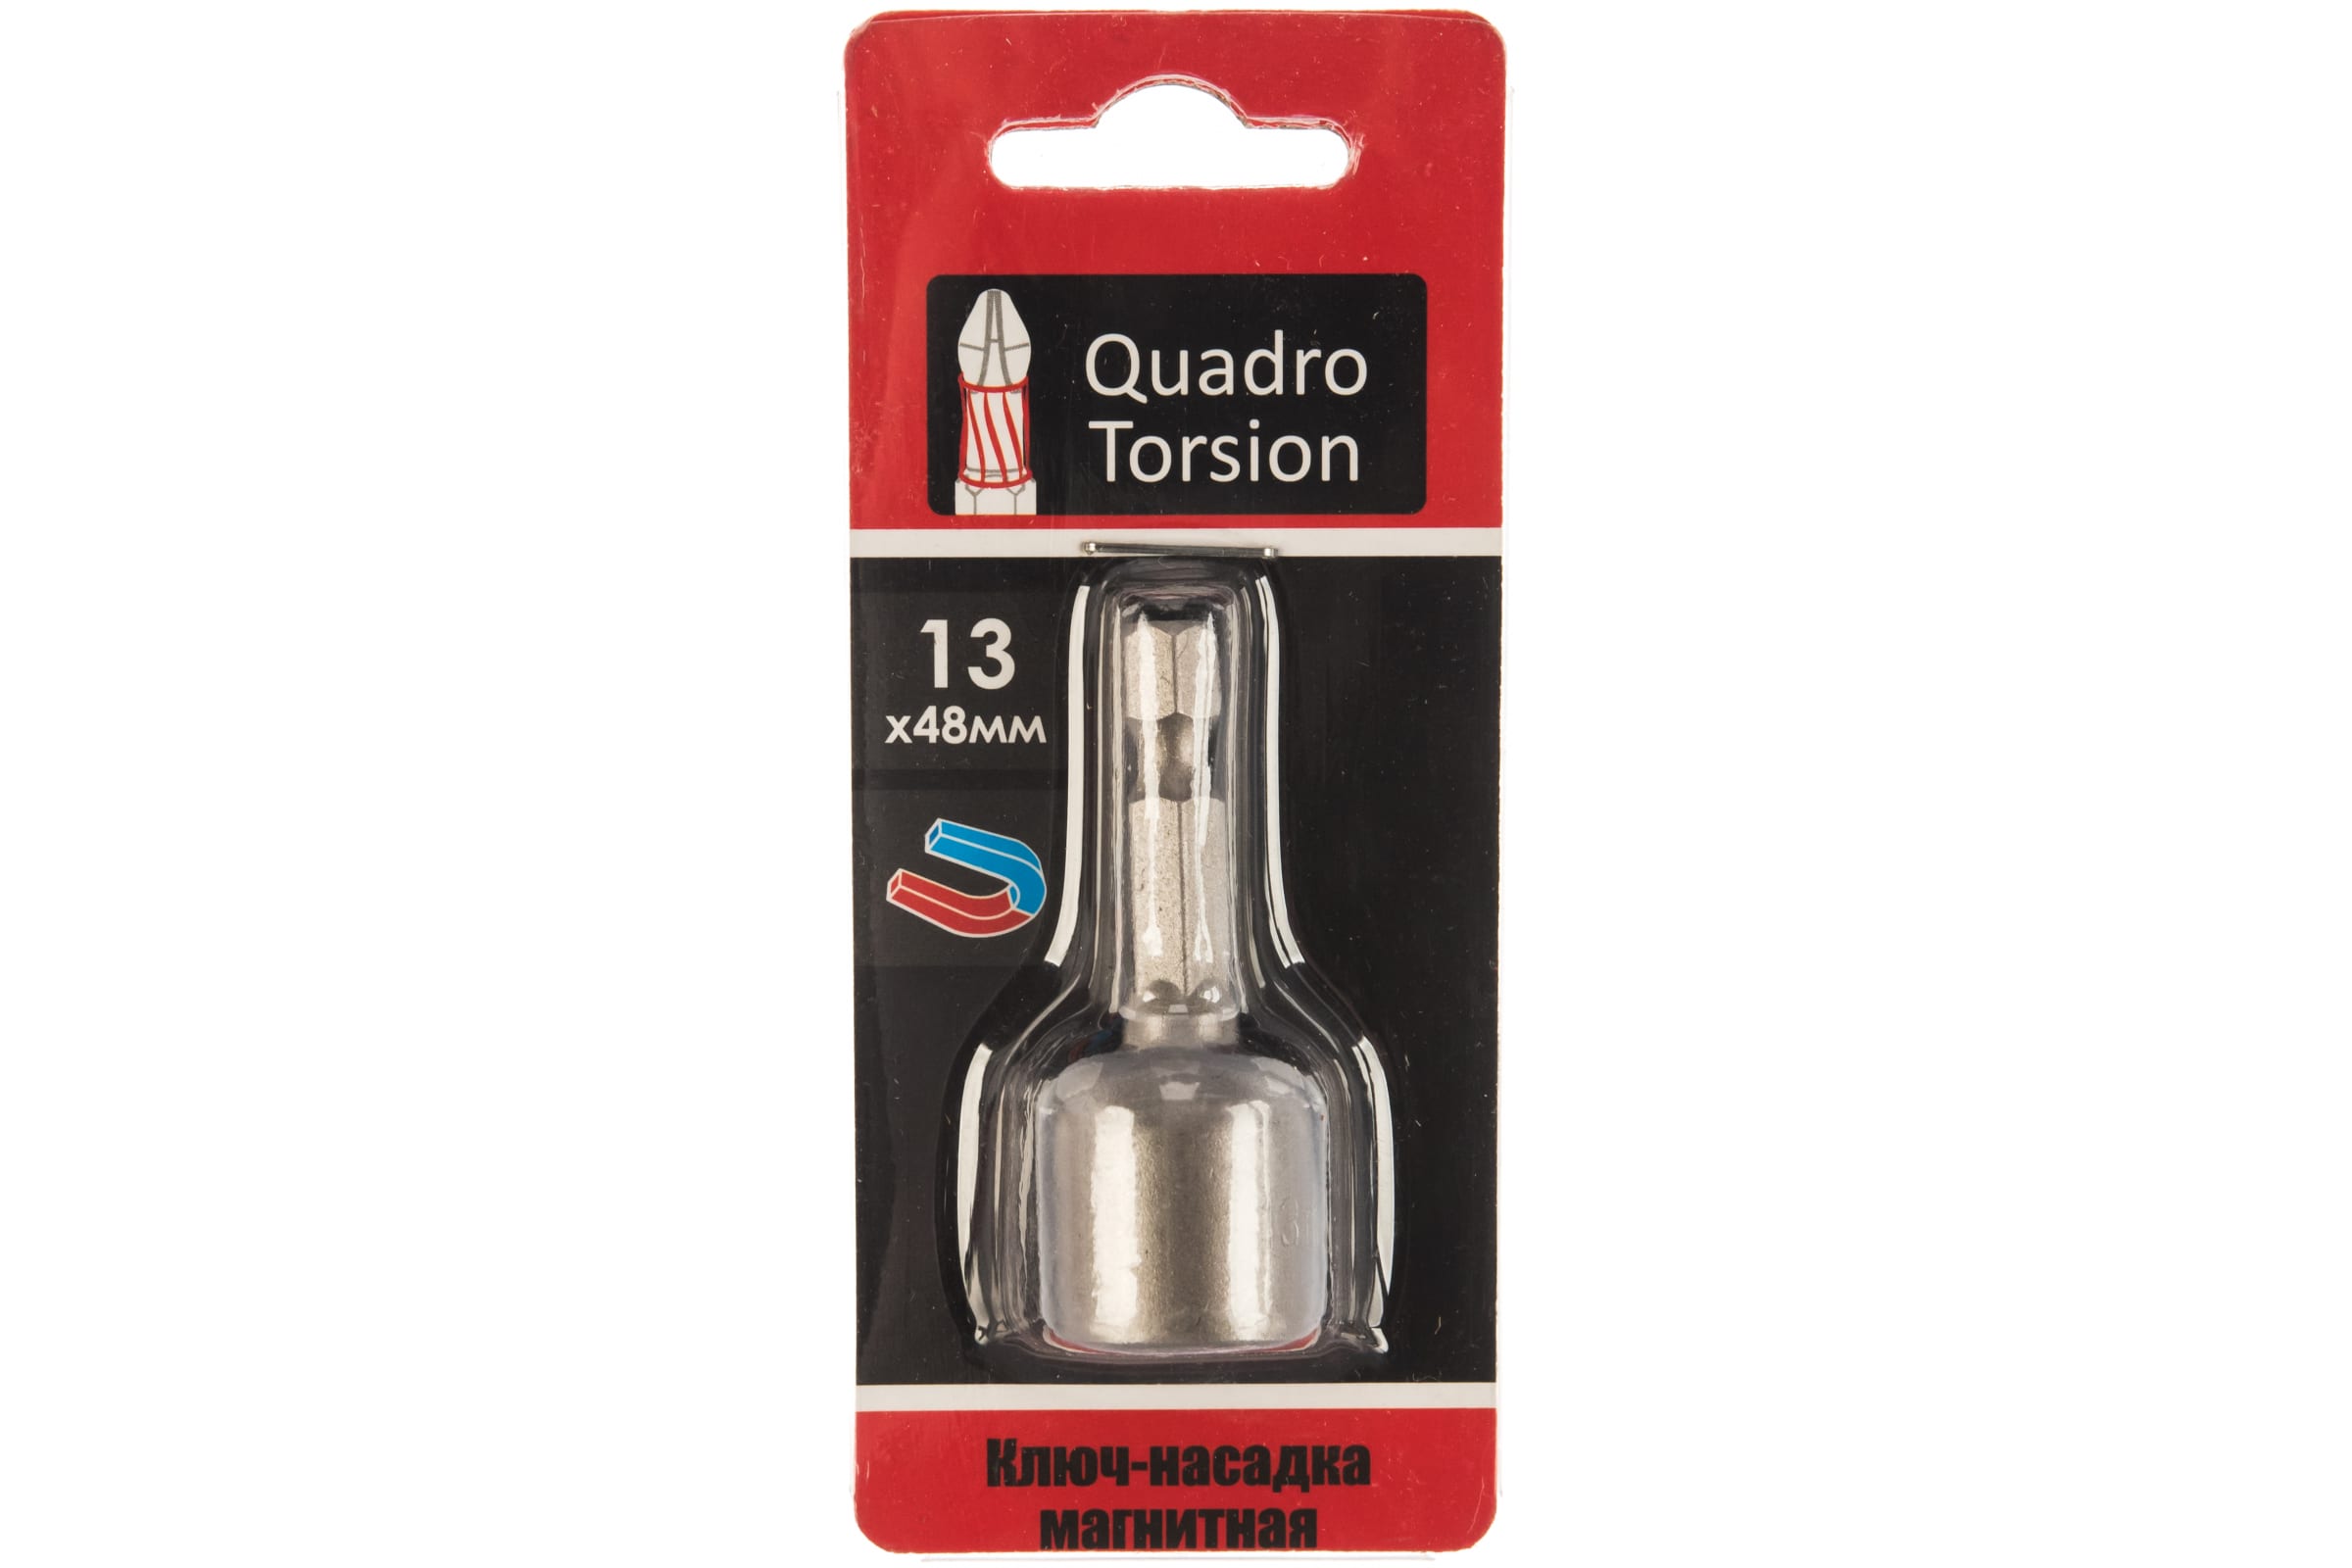 Quadro Torsion Ключ-насадка магнитная 13х48мм 1 шт./карта 400113